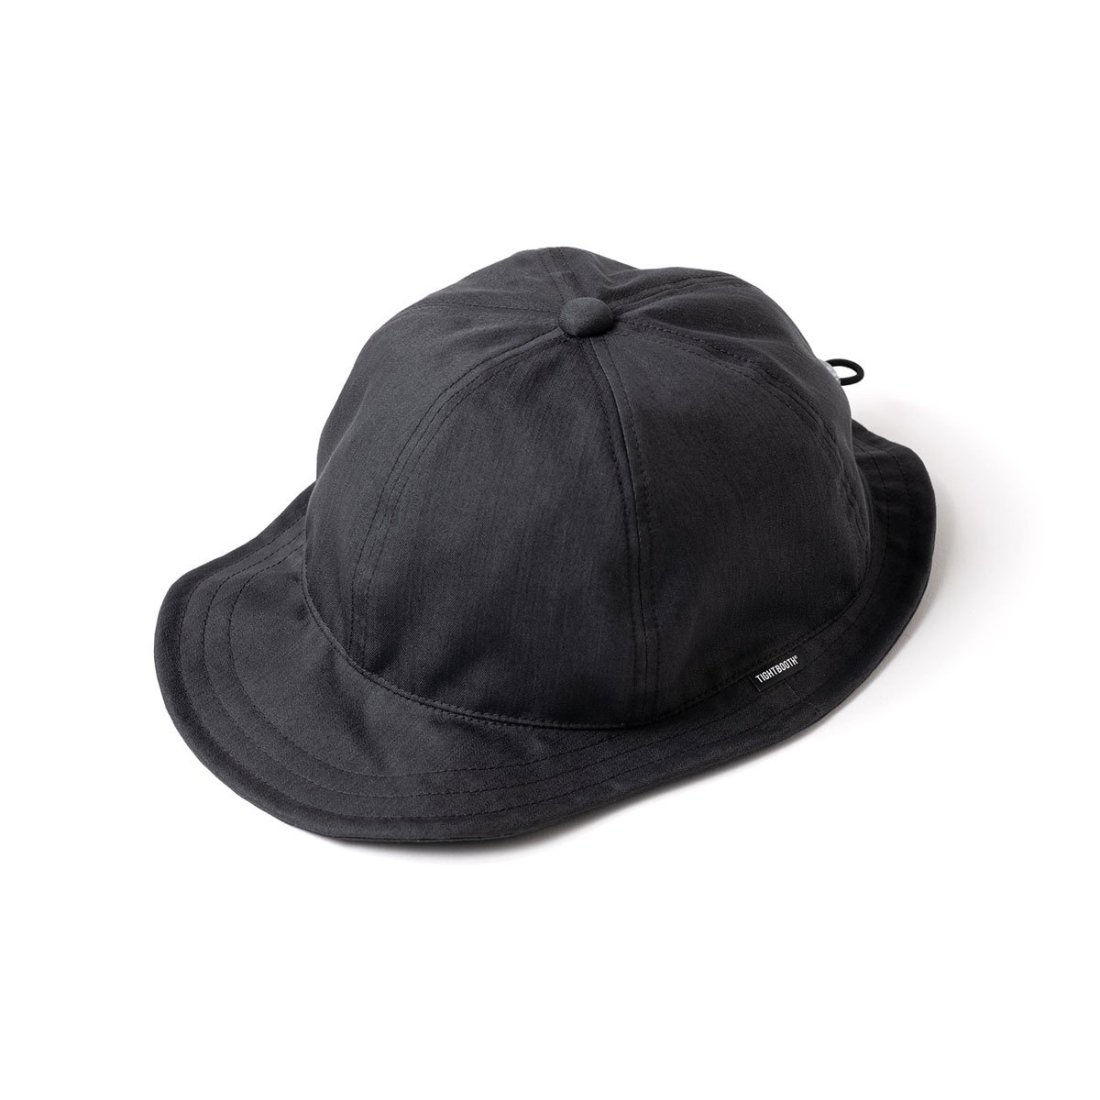 tightbooth cord helmet cap black